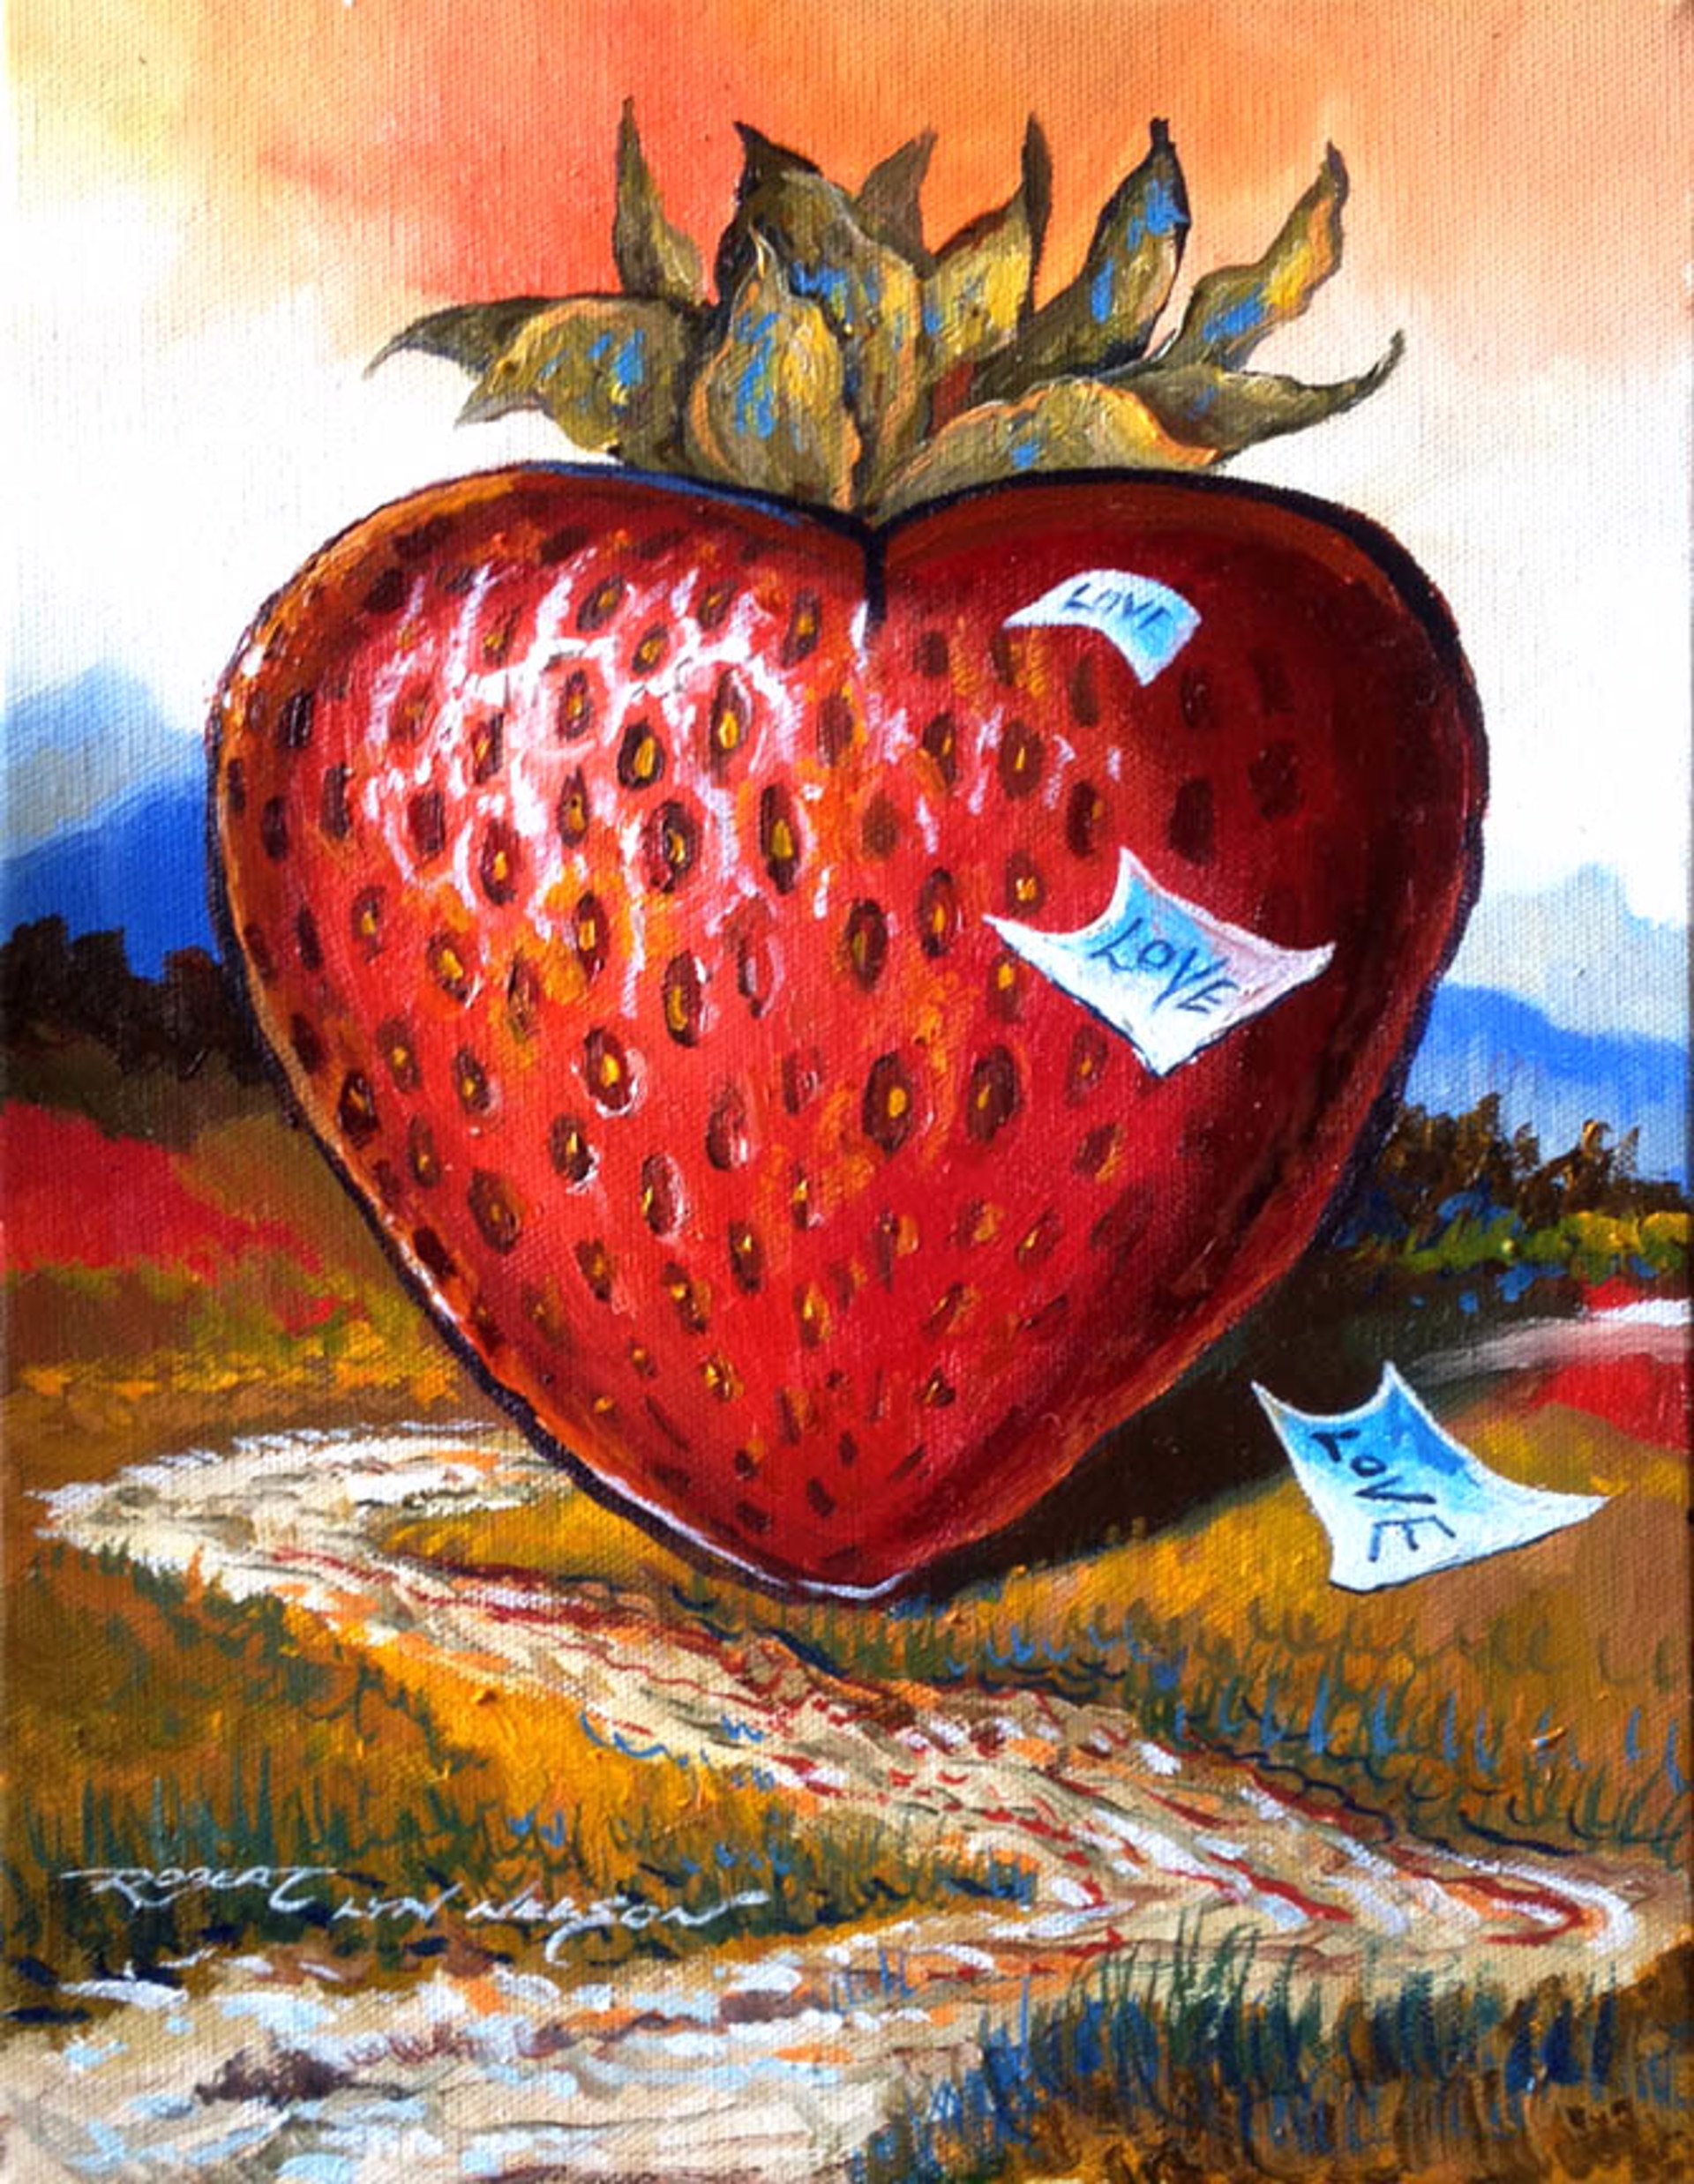 Strawberry Fields Forever III by Robert Lyn Nelson